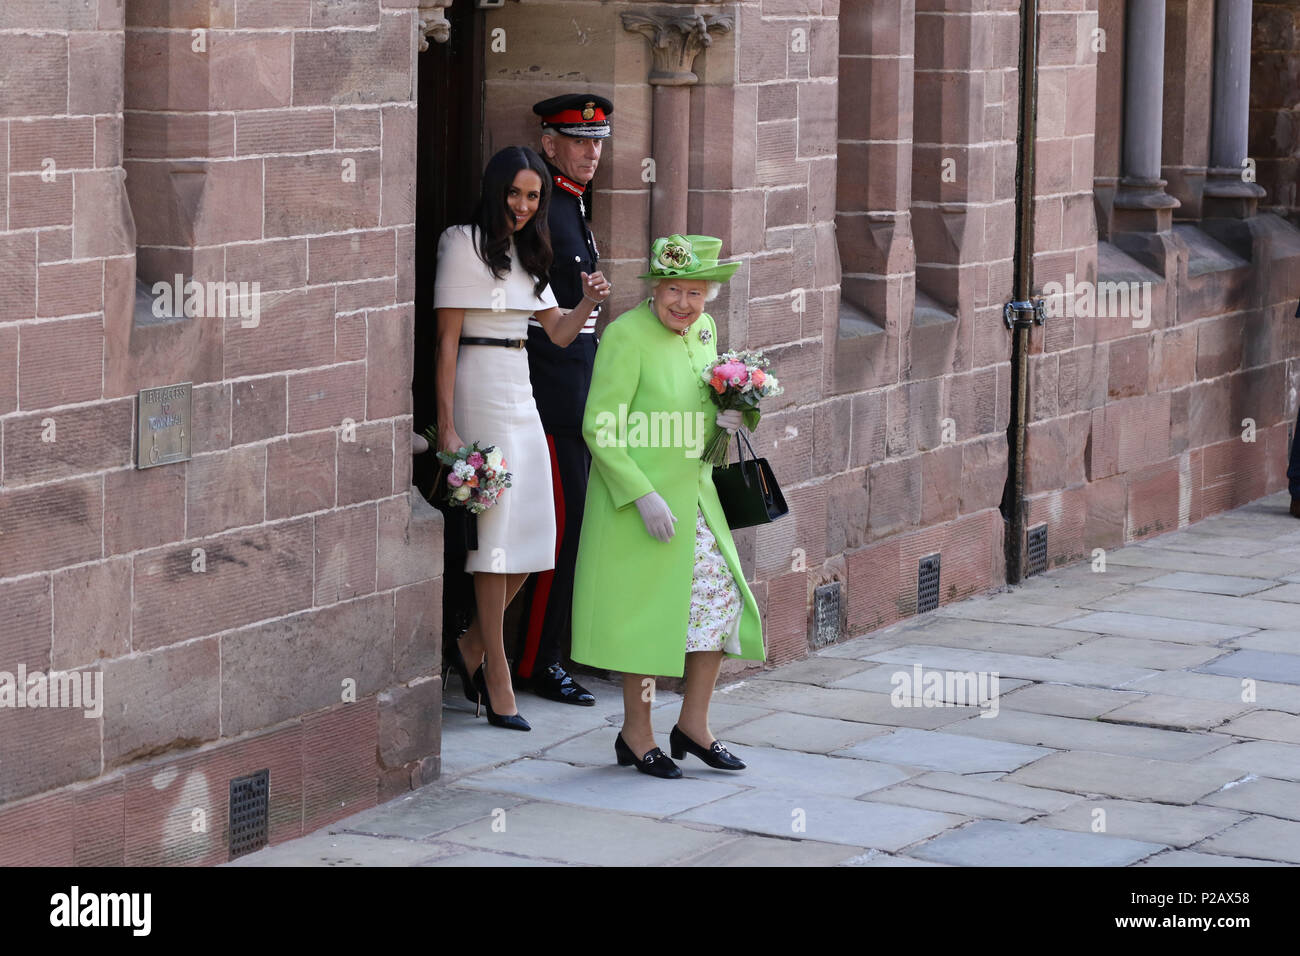 Königin Elizabeth II und Meghan Markle, Herzogin von Sussex, besuchen Sie Chester auf ihren ersten öffentlichen Engagement zusammen. Chester, Cheshire, am 14. Juni 2018. Credit: Paul Marriott/Alamy leben Nachrichten Stockfoto